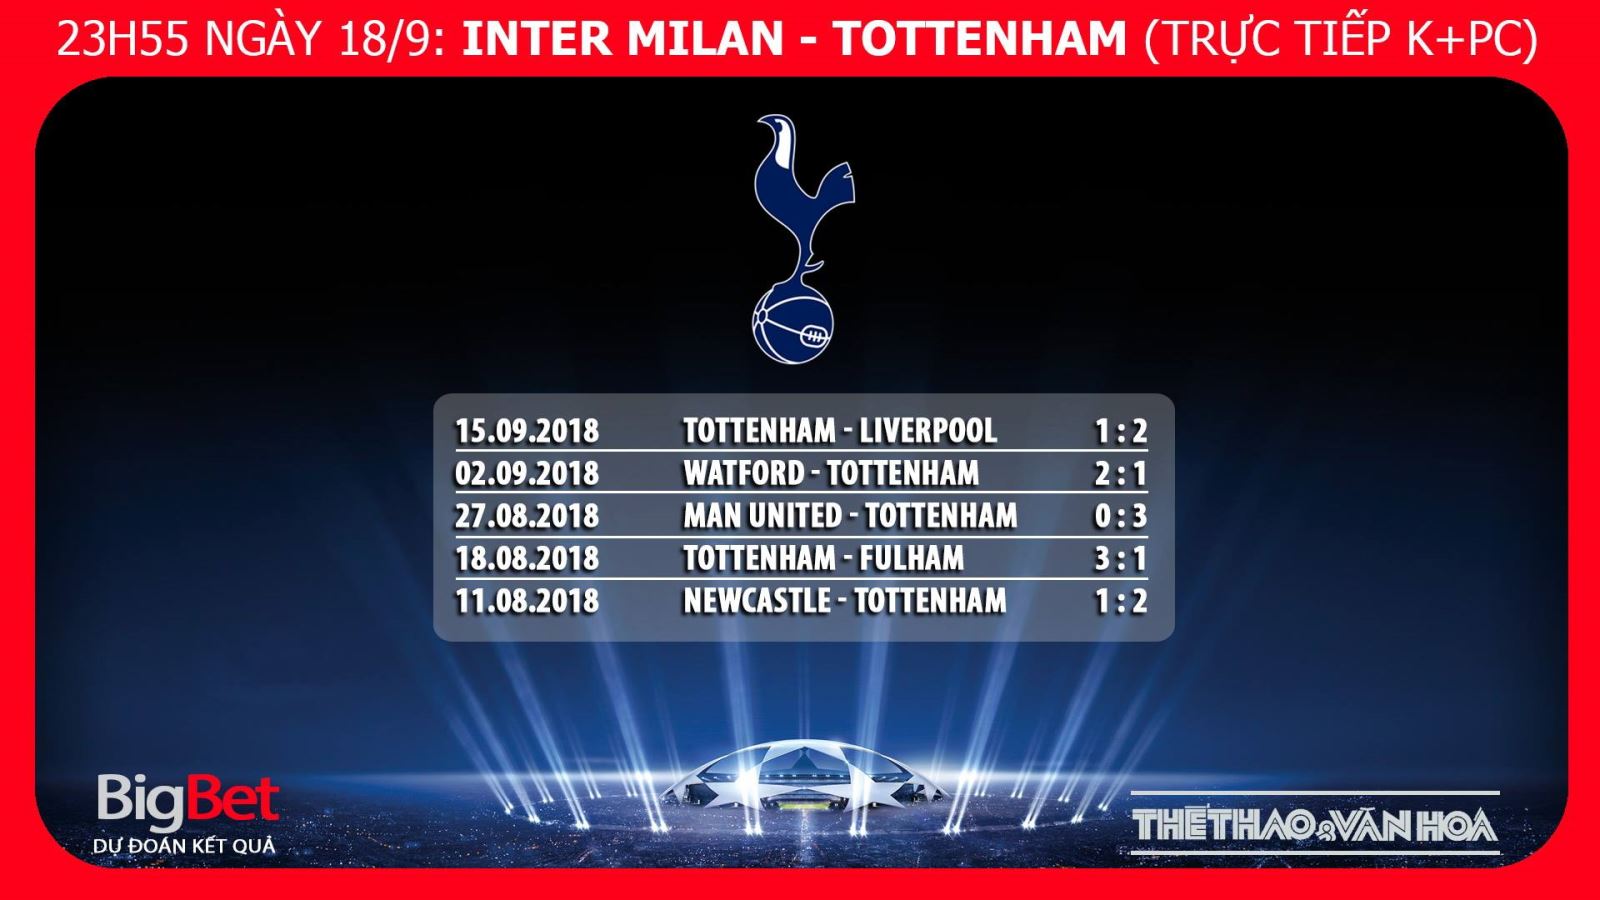 Nhận định bóng đá Inter Milan vs Tottenham. Nhận định Inter Milan vs Tottenham